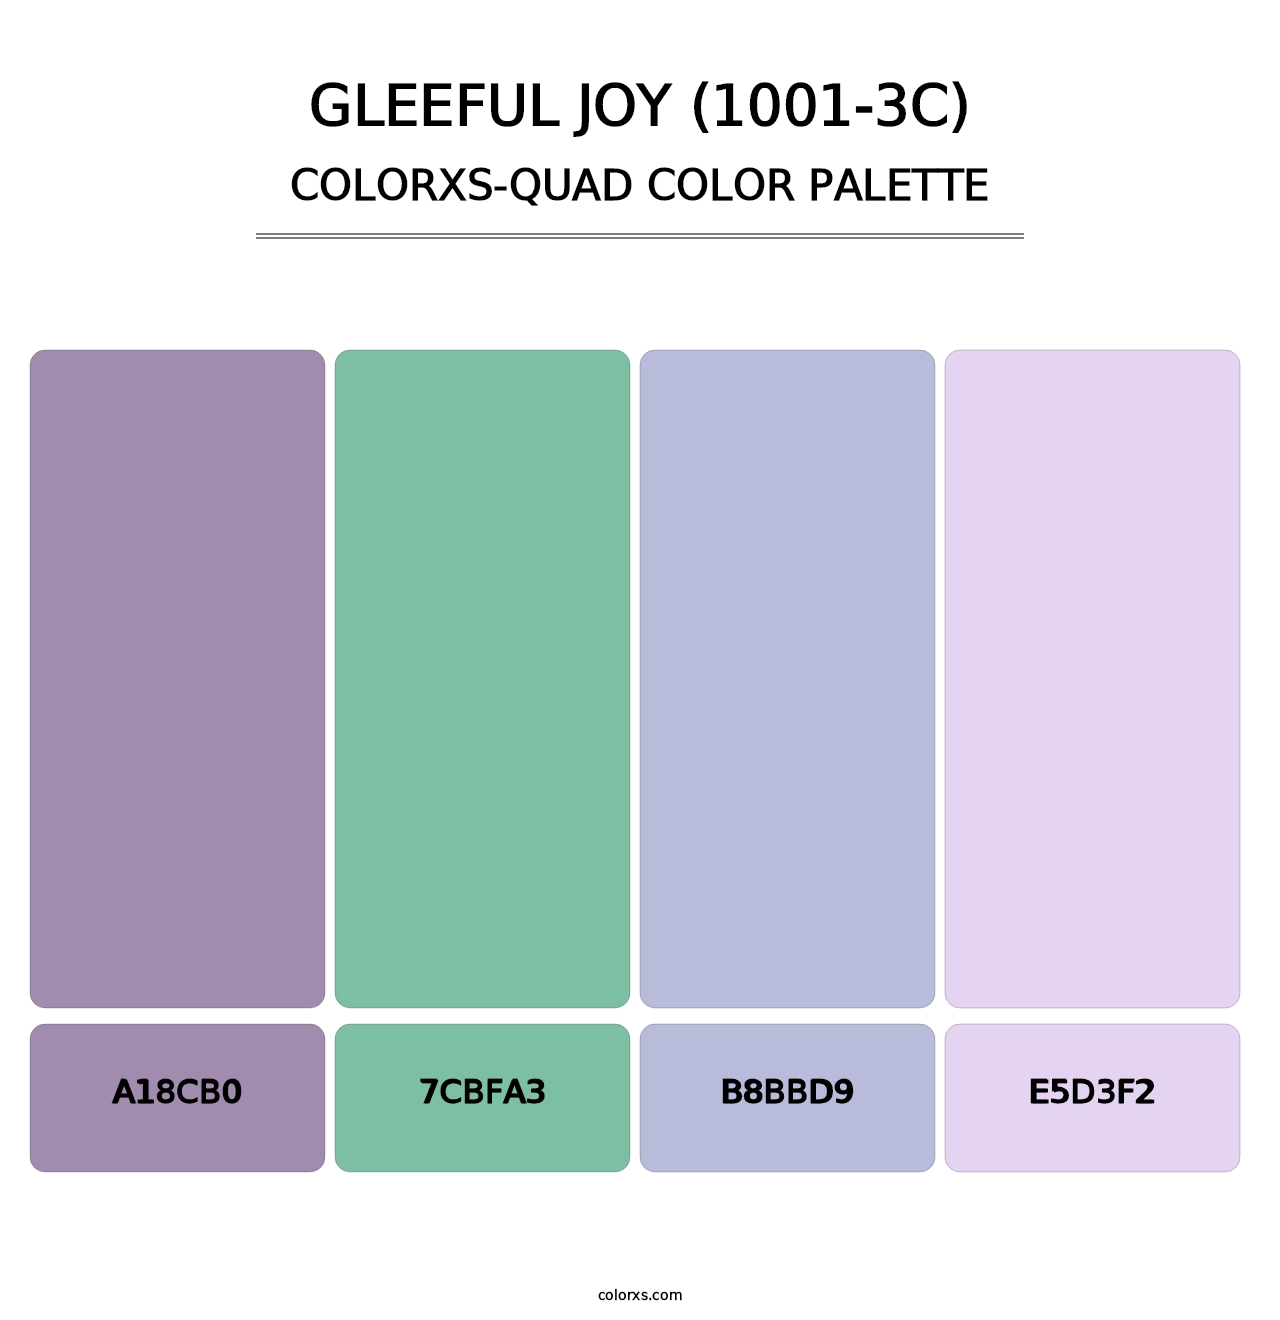 Gleeful Joy (1001-3C) - Colorxs Quad Palette